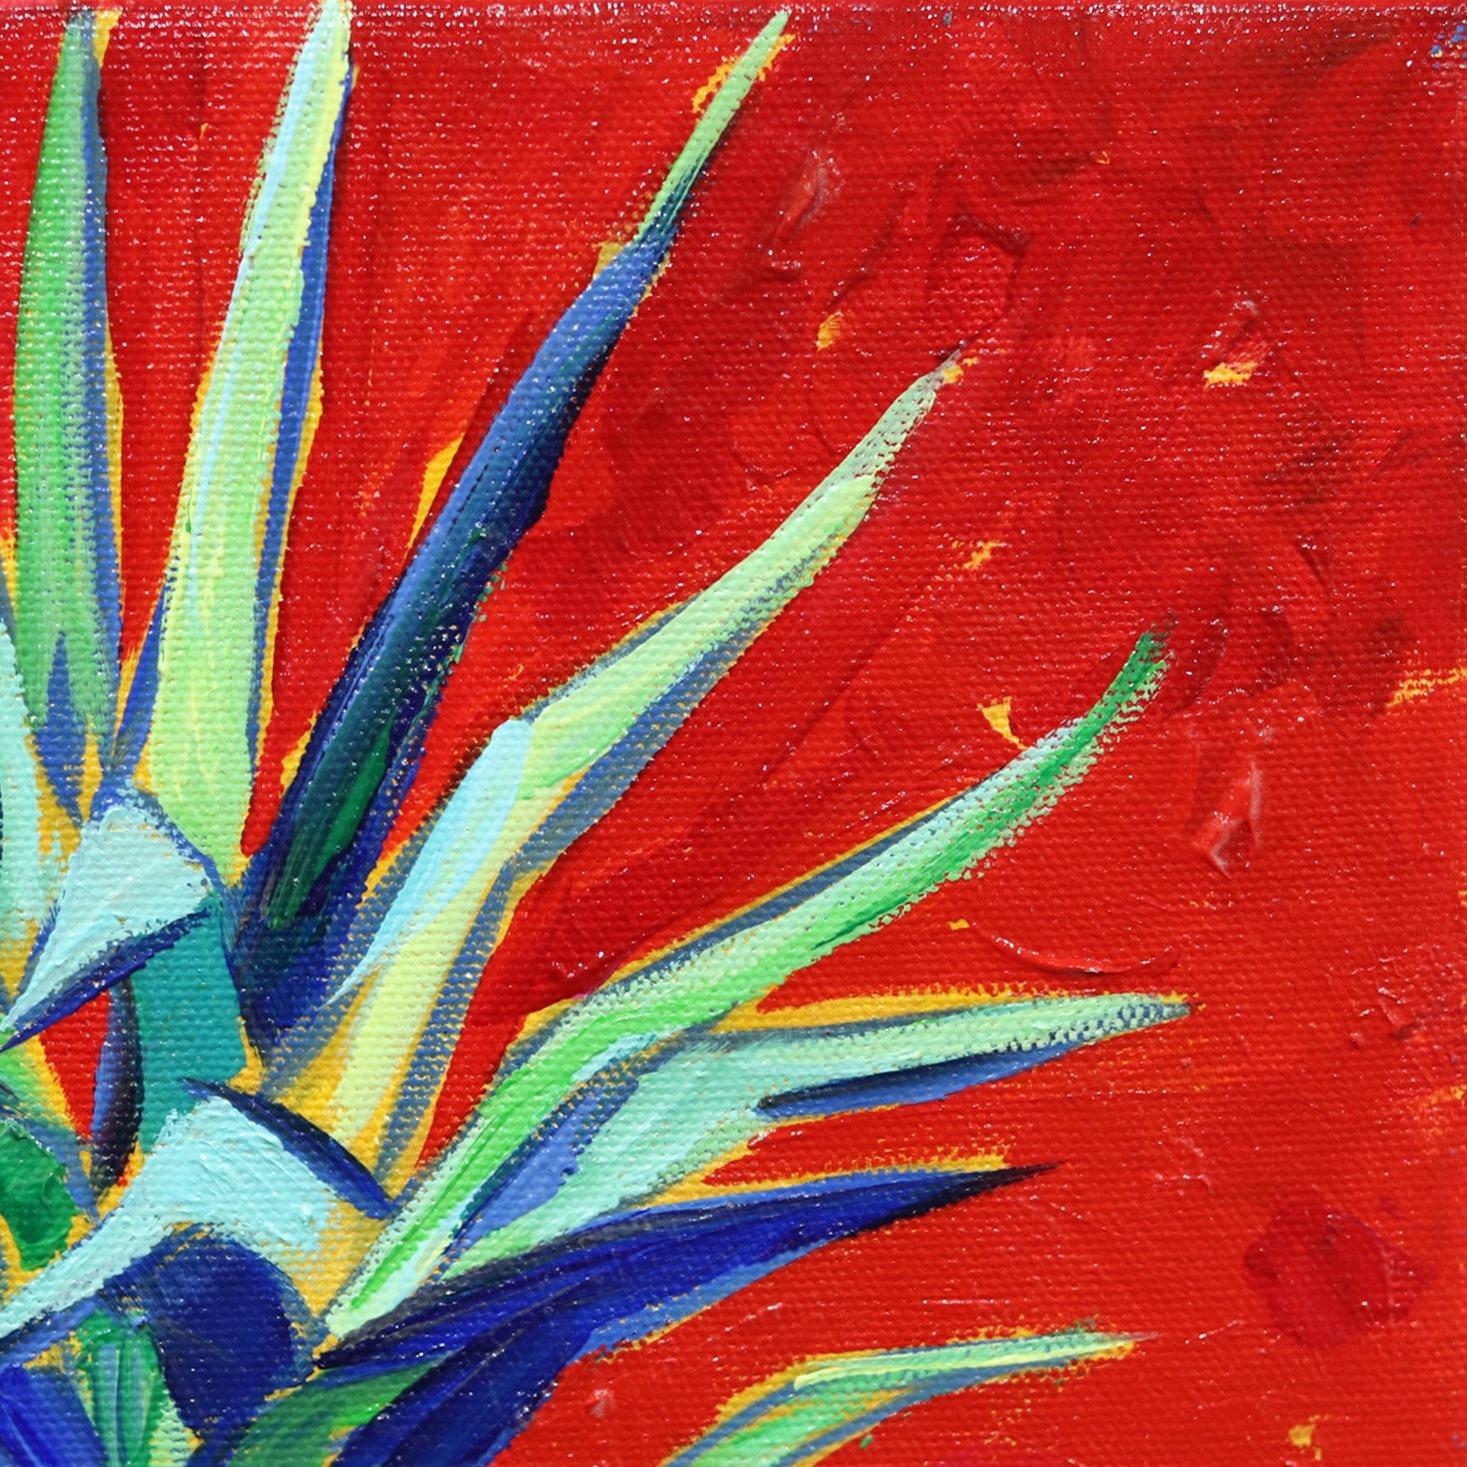 pineapple paintings